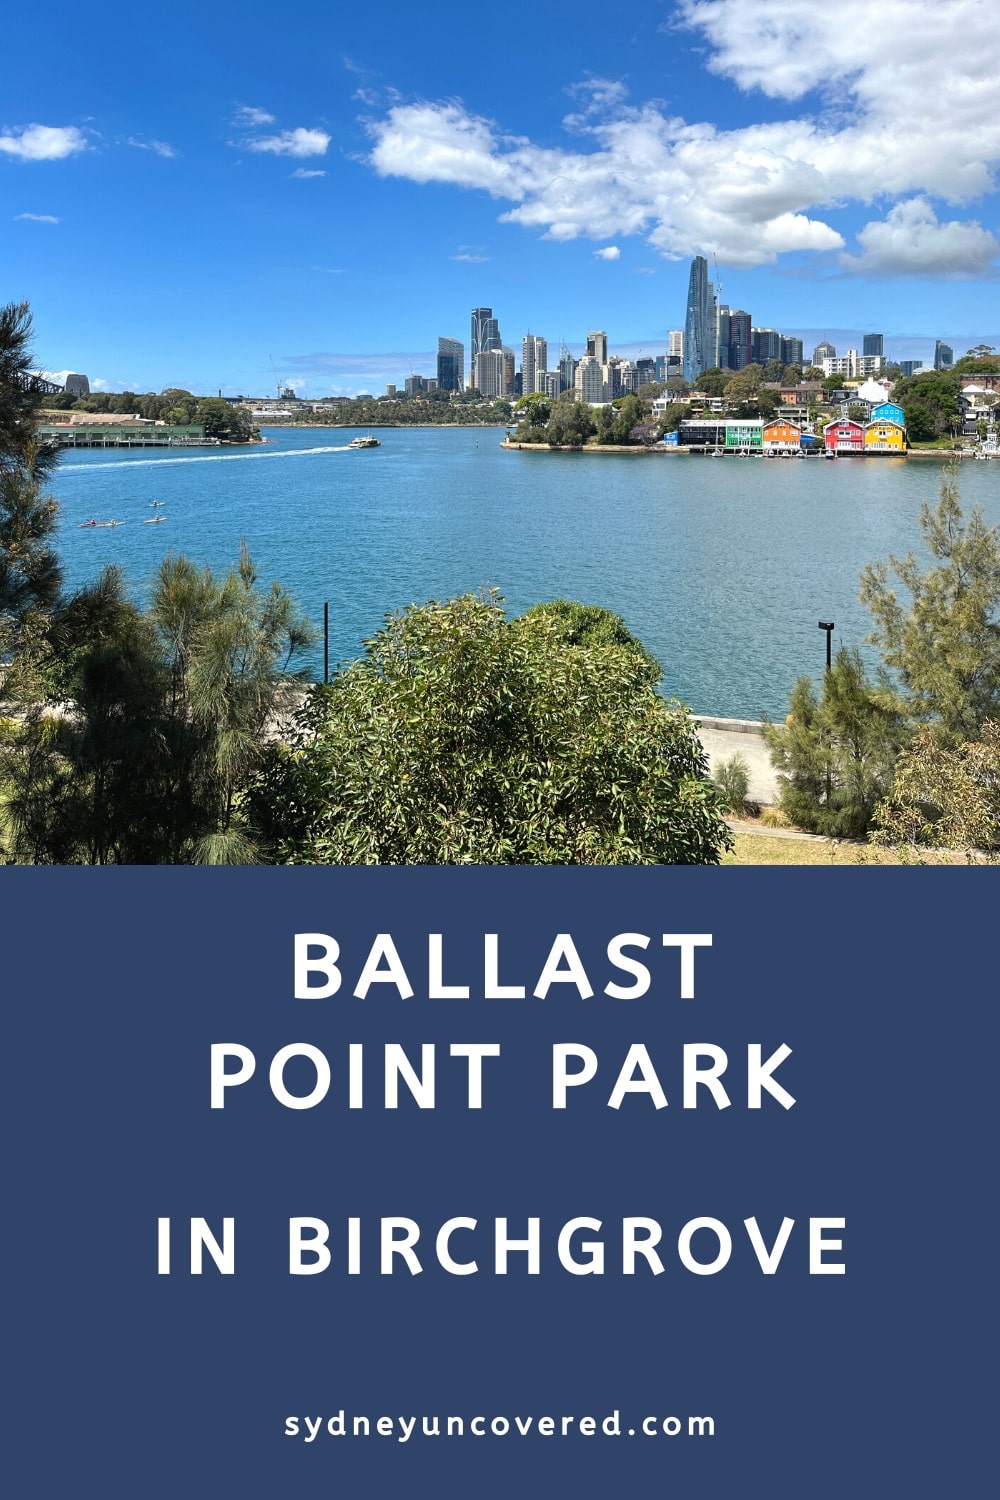 Ballast Point Park in Birchgrove